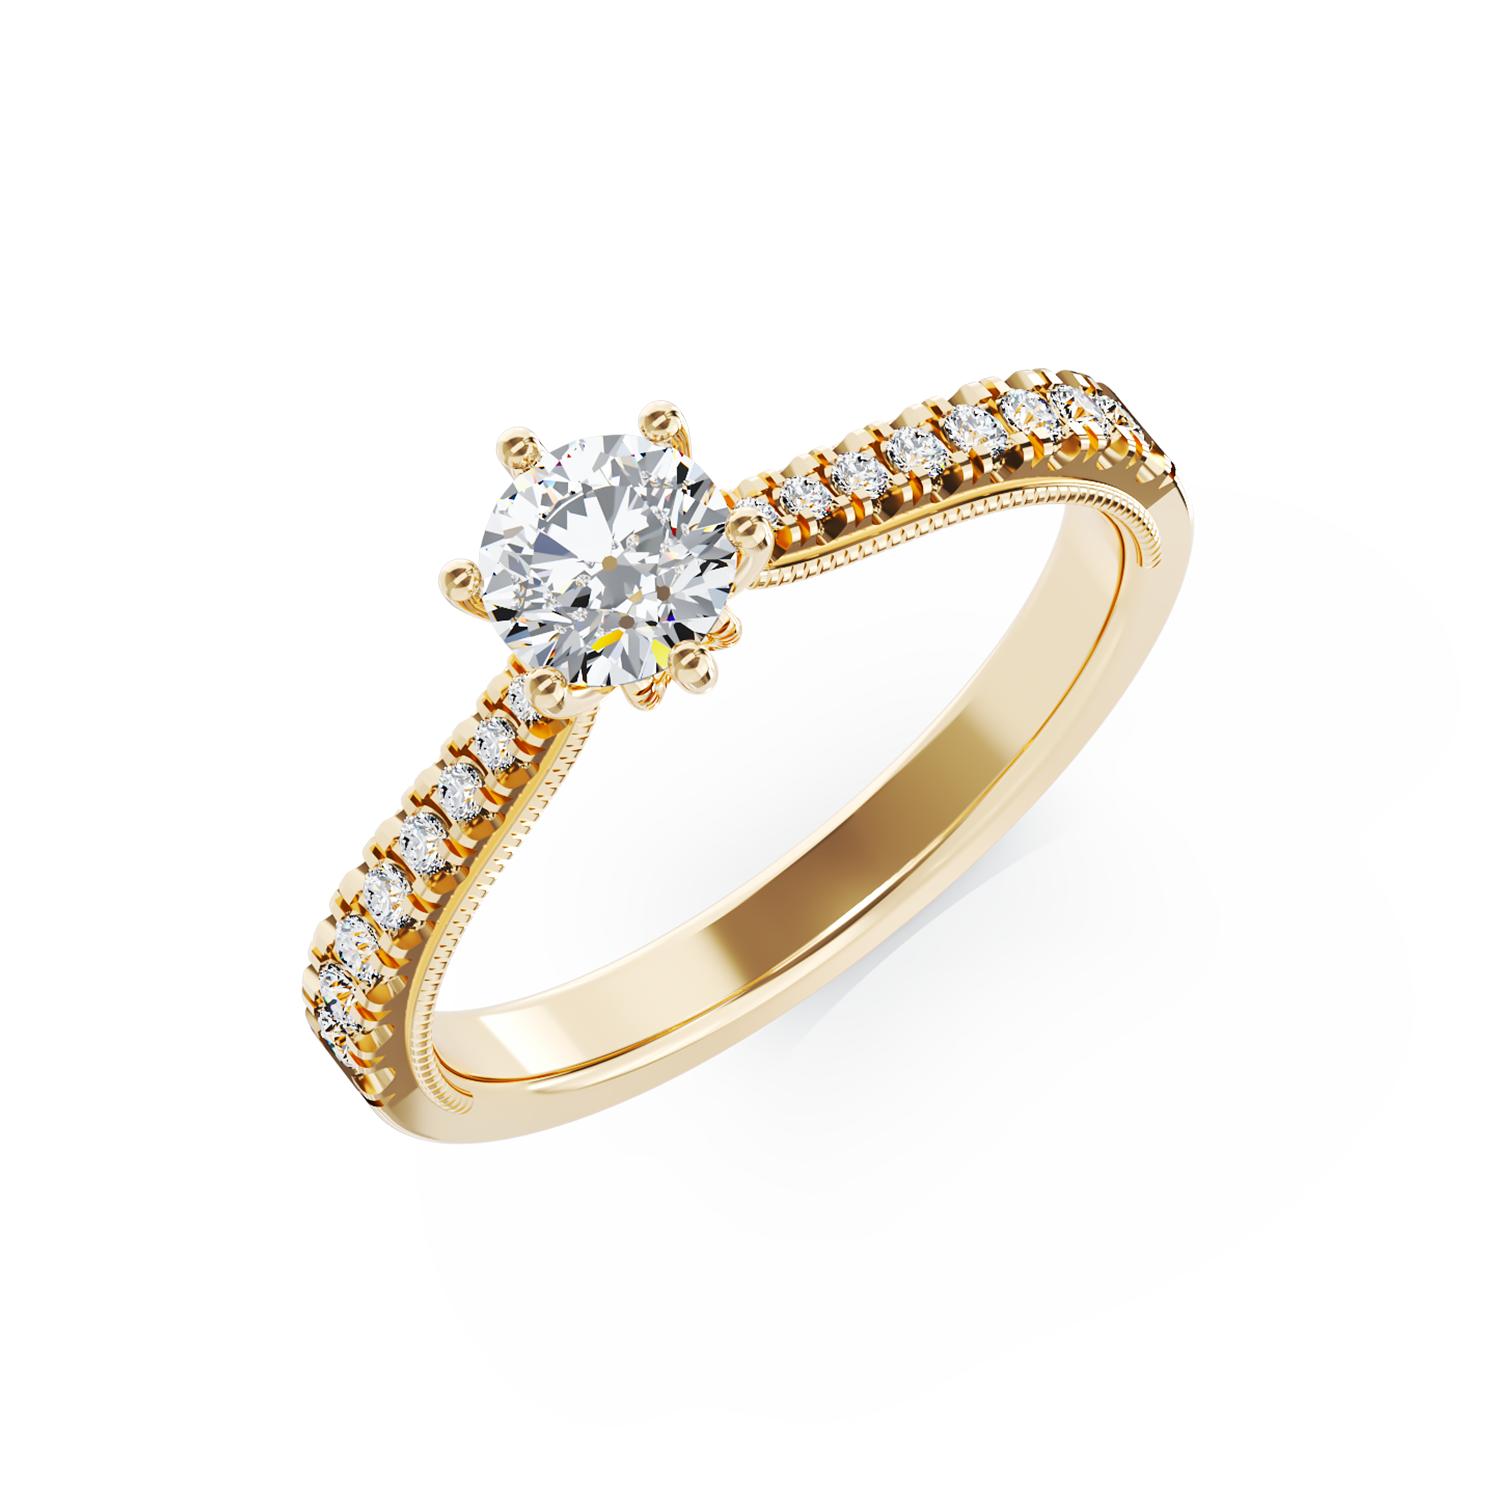 Eljegyzési gyűrű 18K-os sárga aranyból 0,24ct gyémánttal és 0,18ct gyémántokkal. Gramm: 2,4